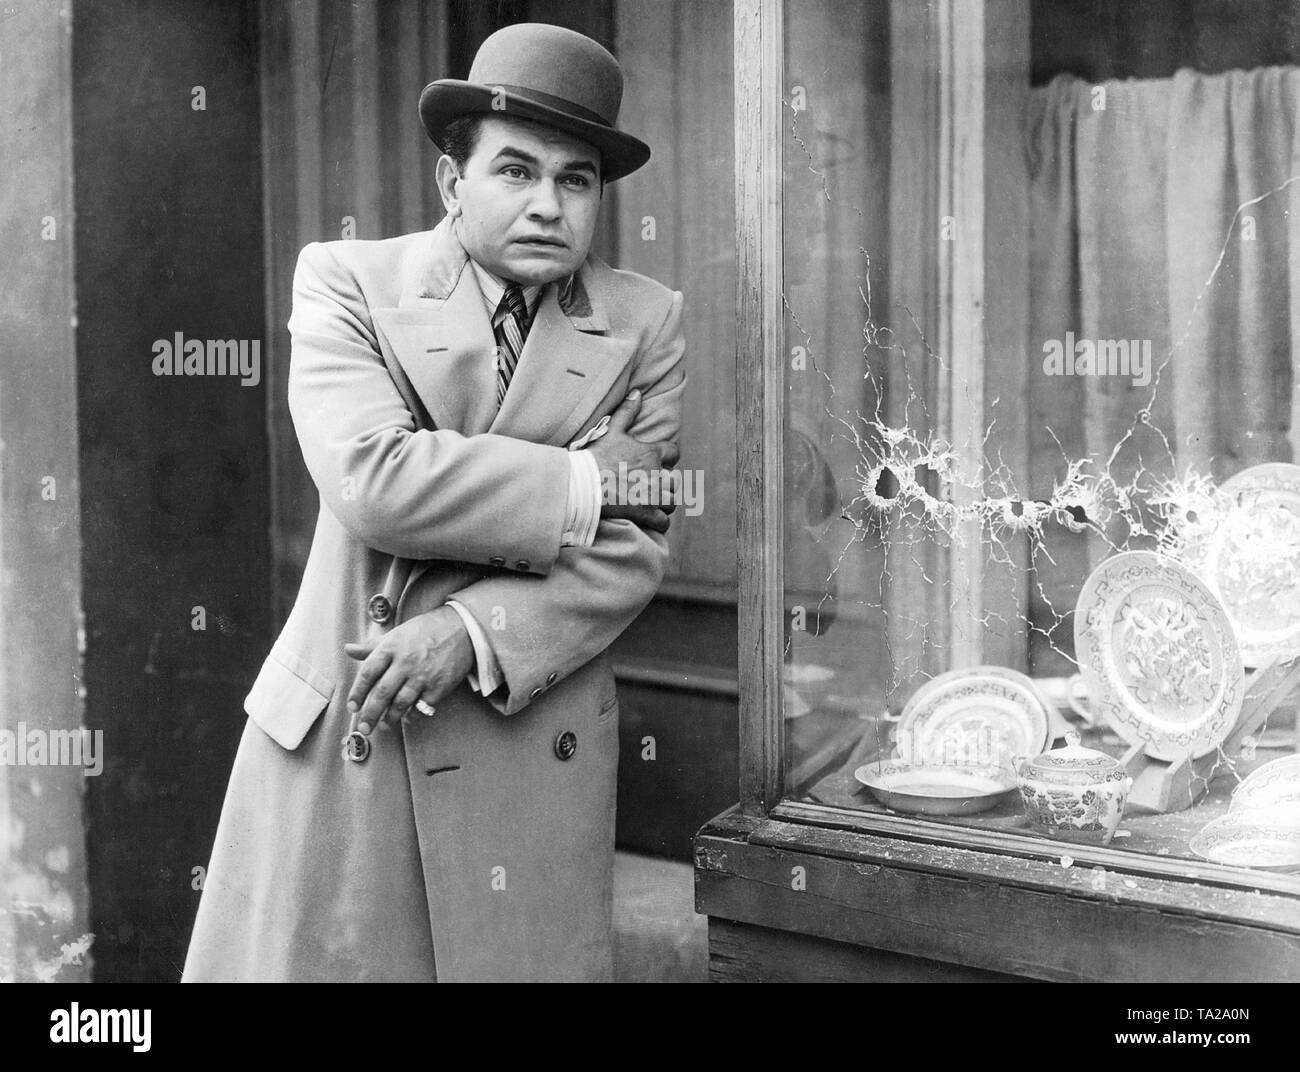 Edward G.Robinson wie Cesare Enrico "Rico" Bandello in "Little Caesar", von Mervyn LeRoy, United States 1930 geleitet. Stockfoto